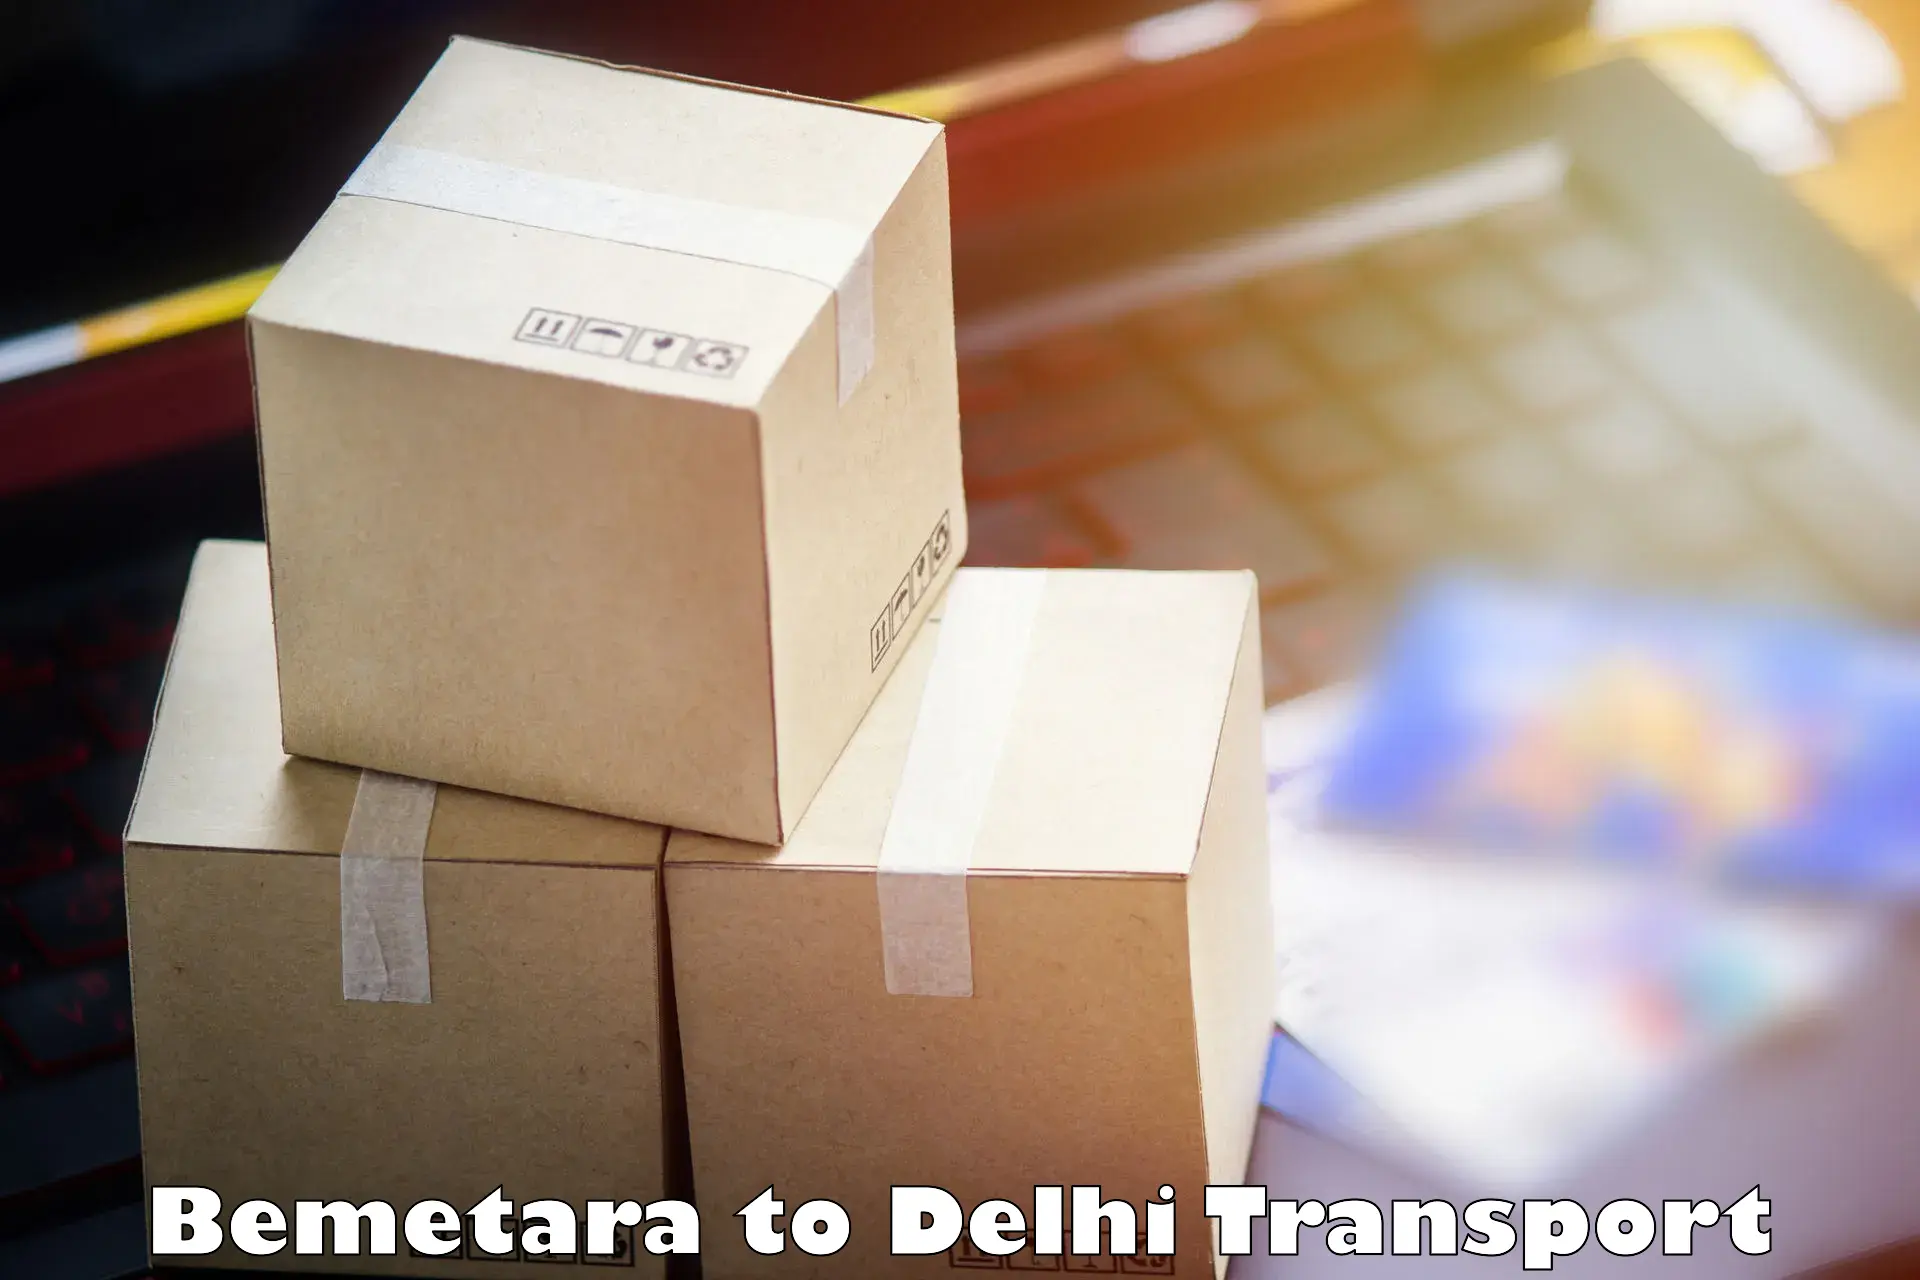 Nearby transport service Bemetara to Jamia Millia Islamia New Delhi